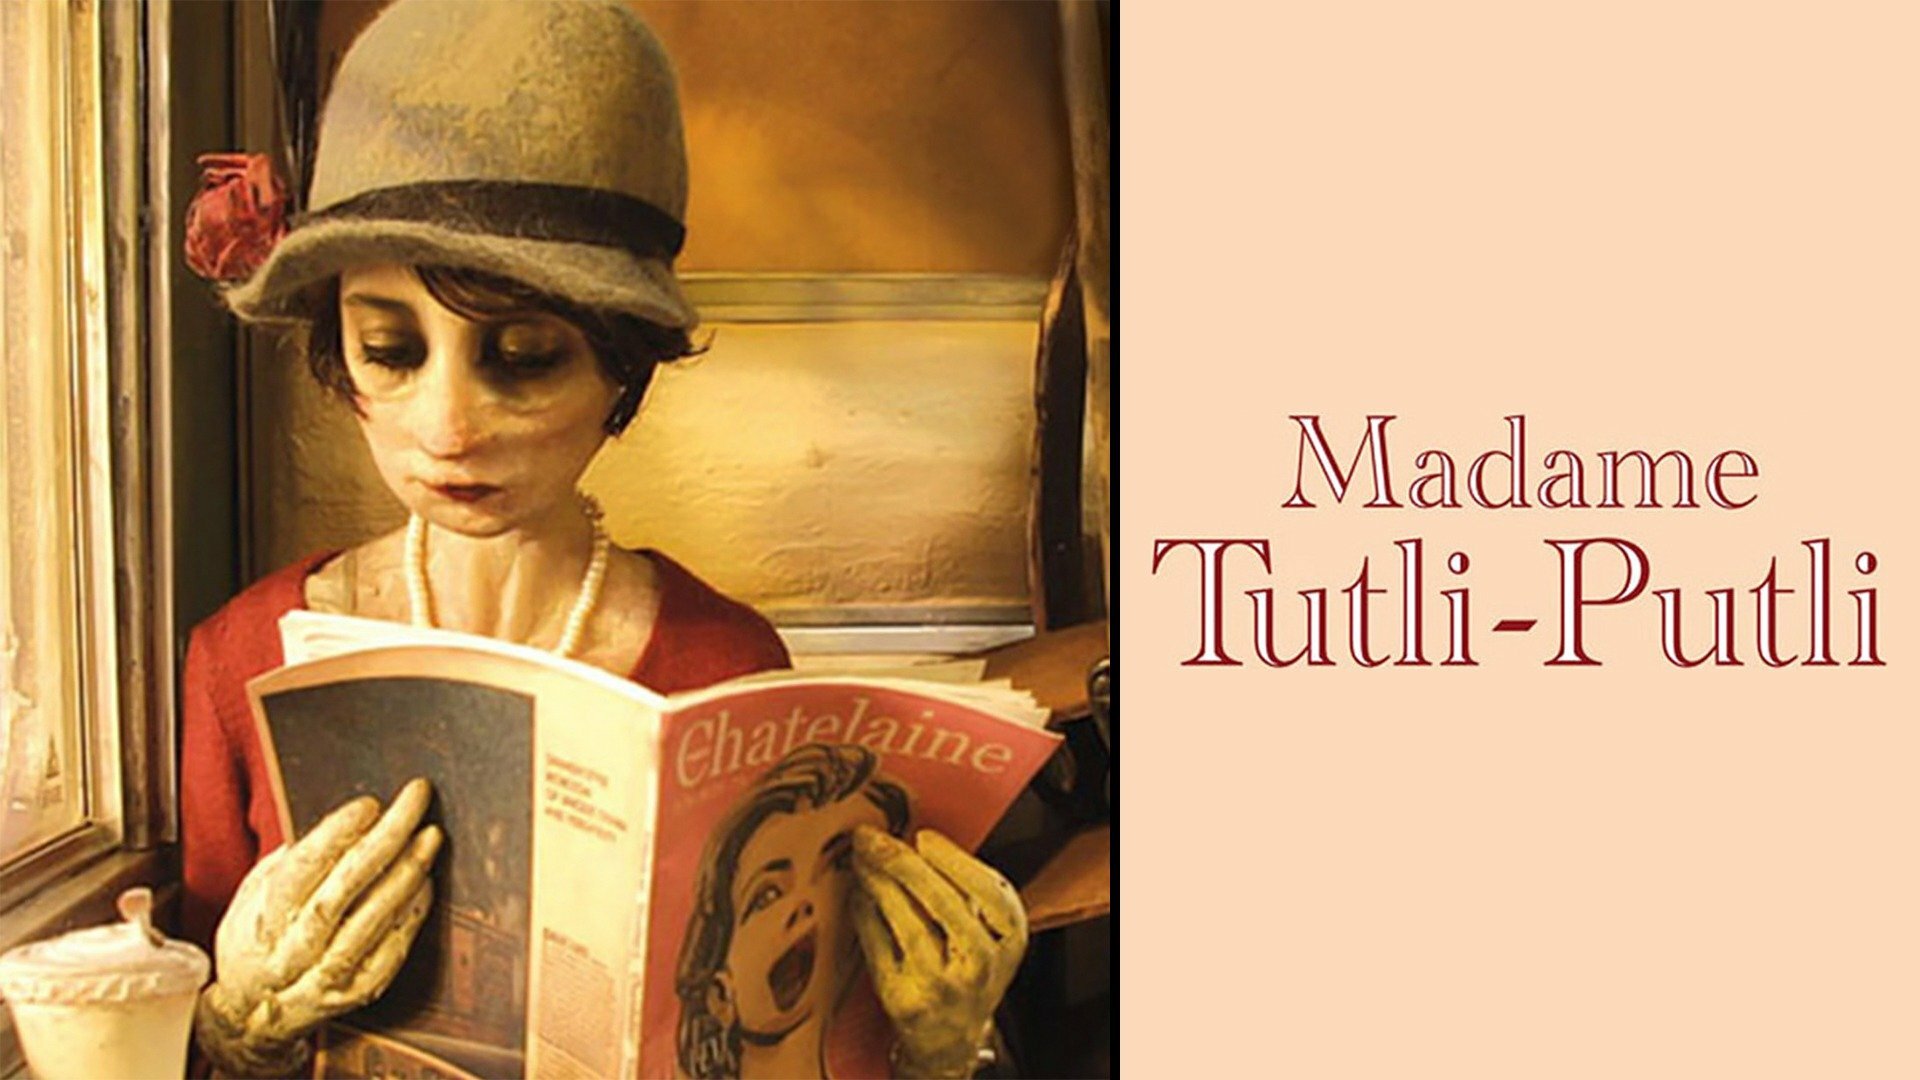 Madame Tutli-putli